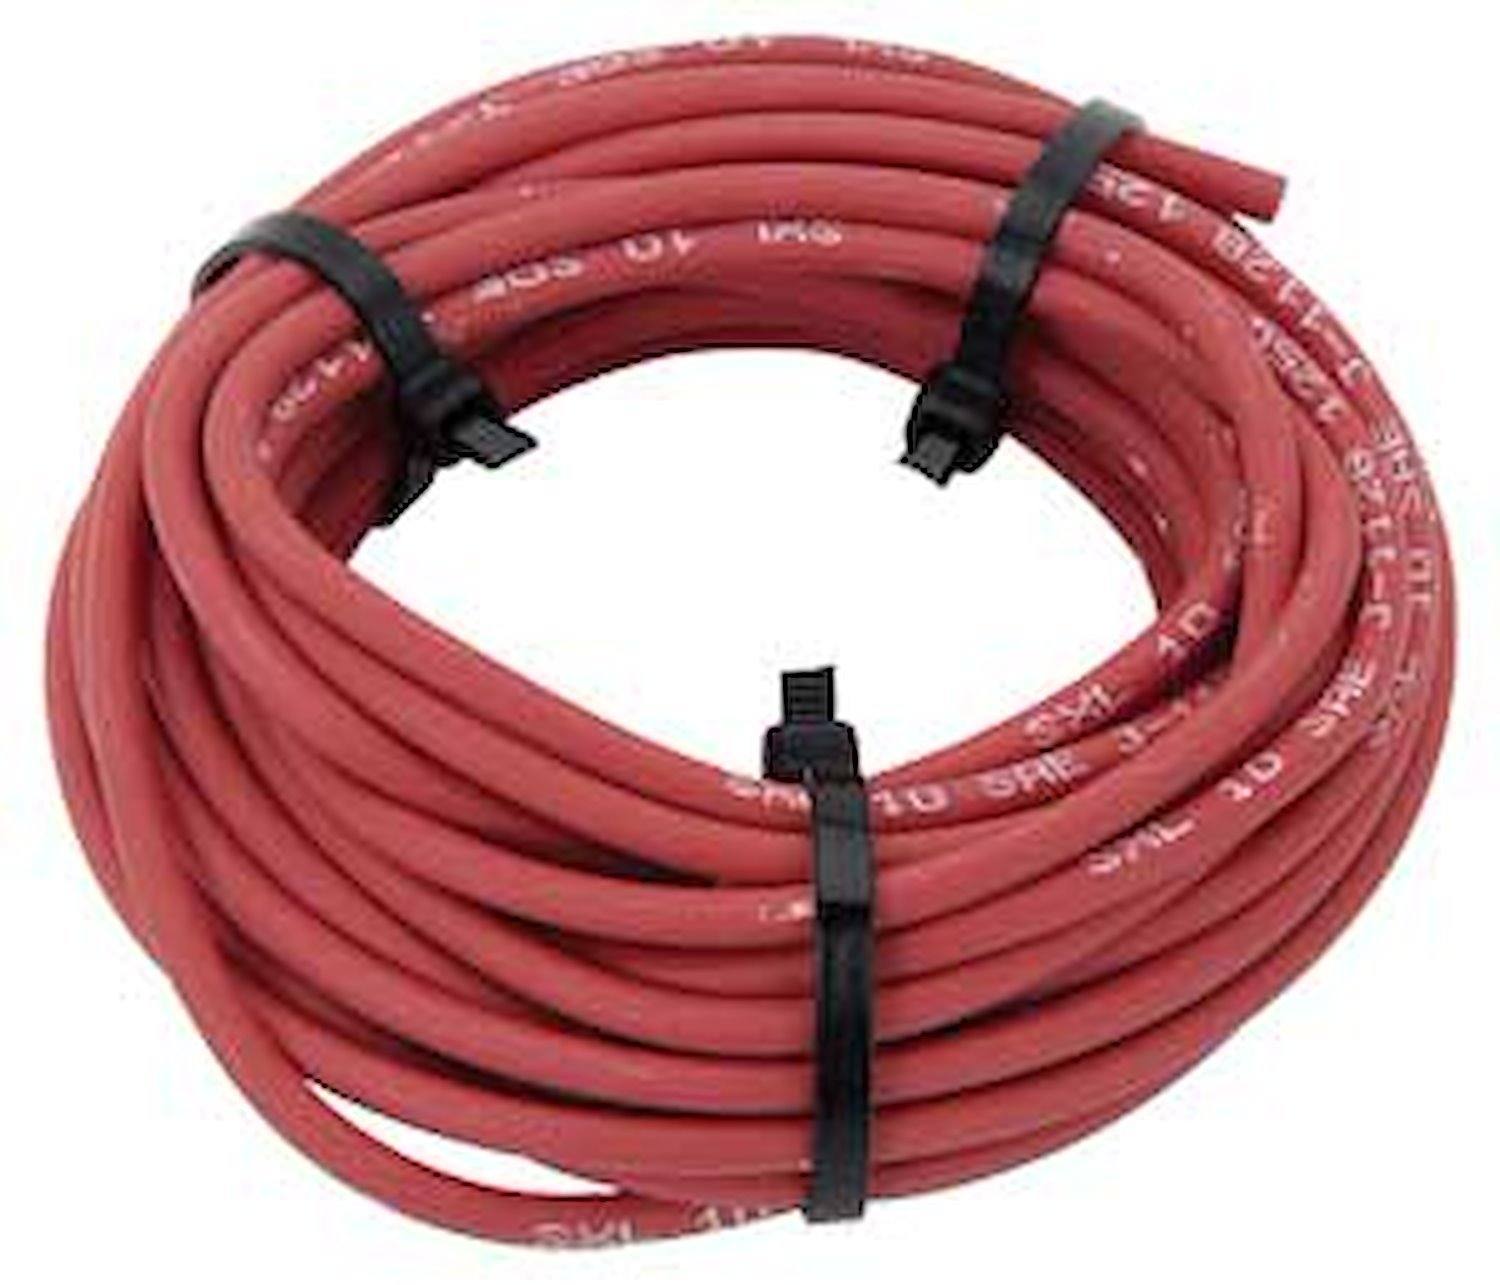 JEGS 10841 Premium Red 8 Gauge Automotive Wire